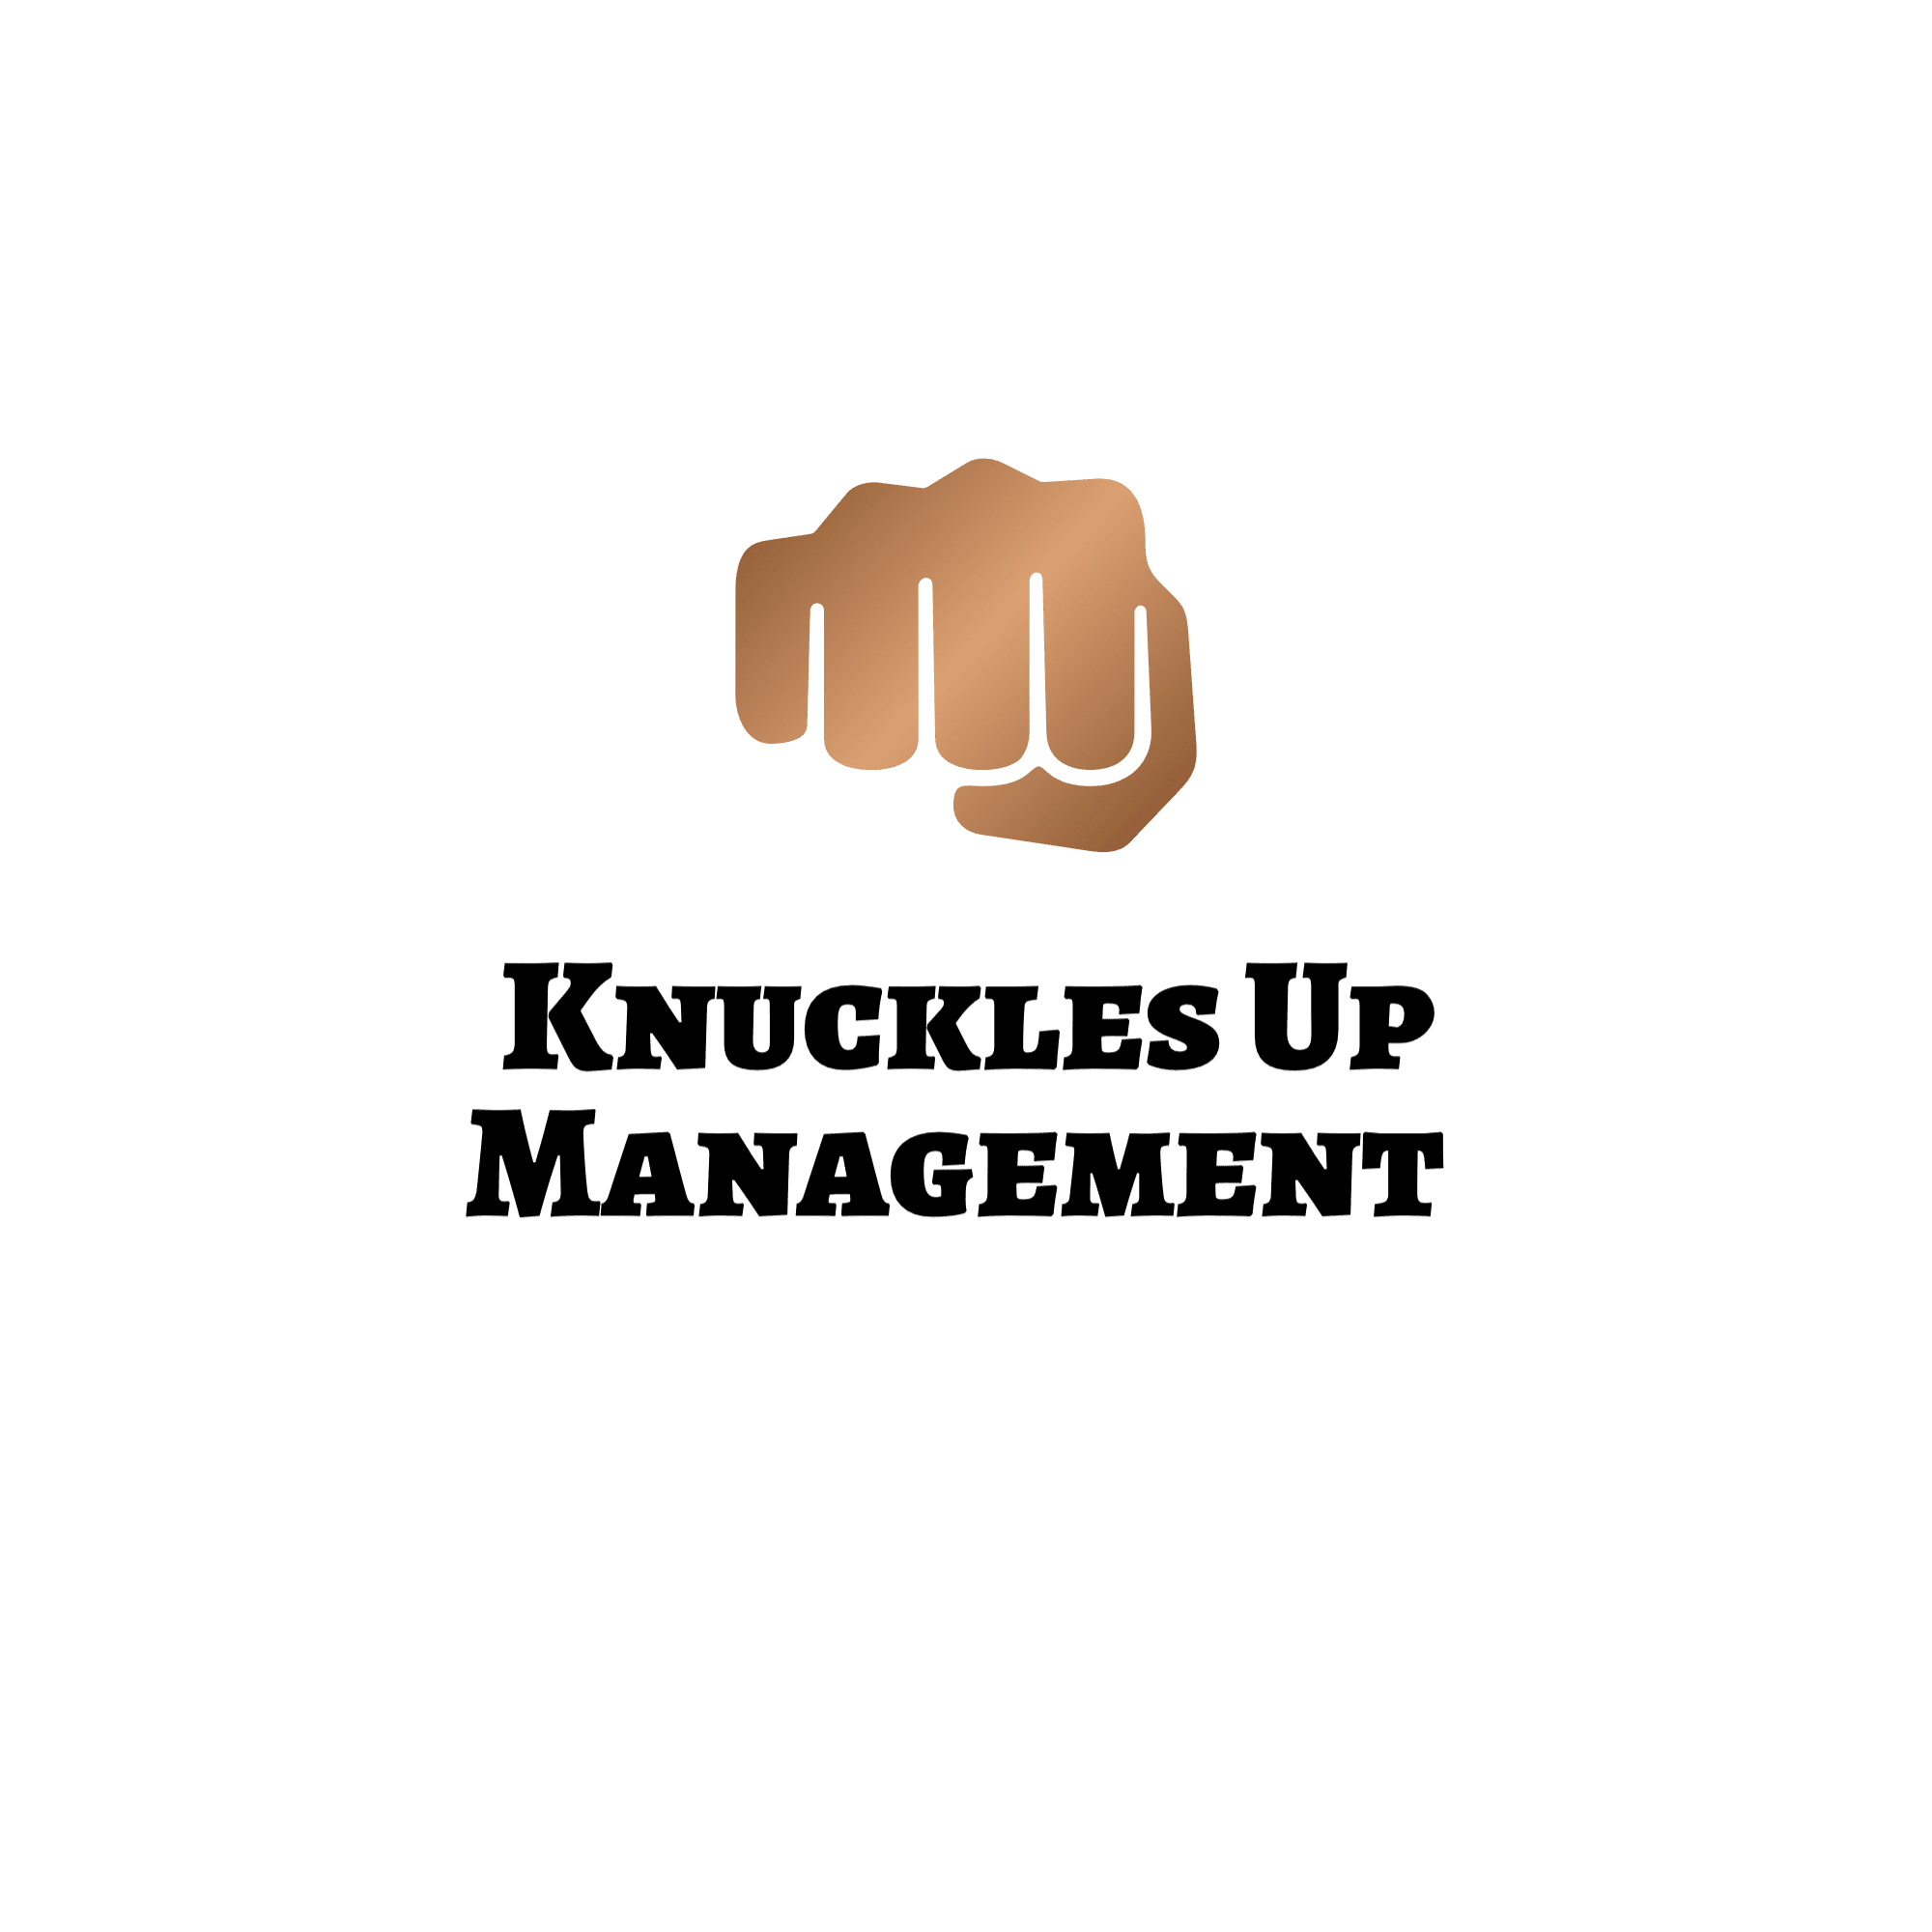 Knuckles Up Management